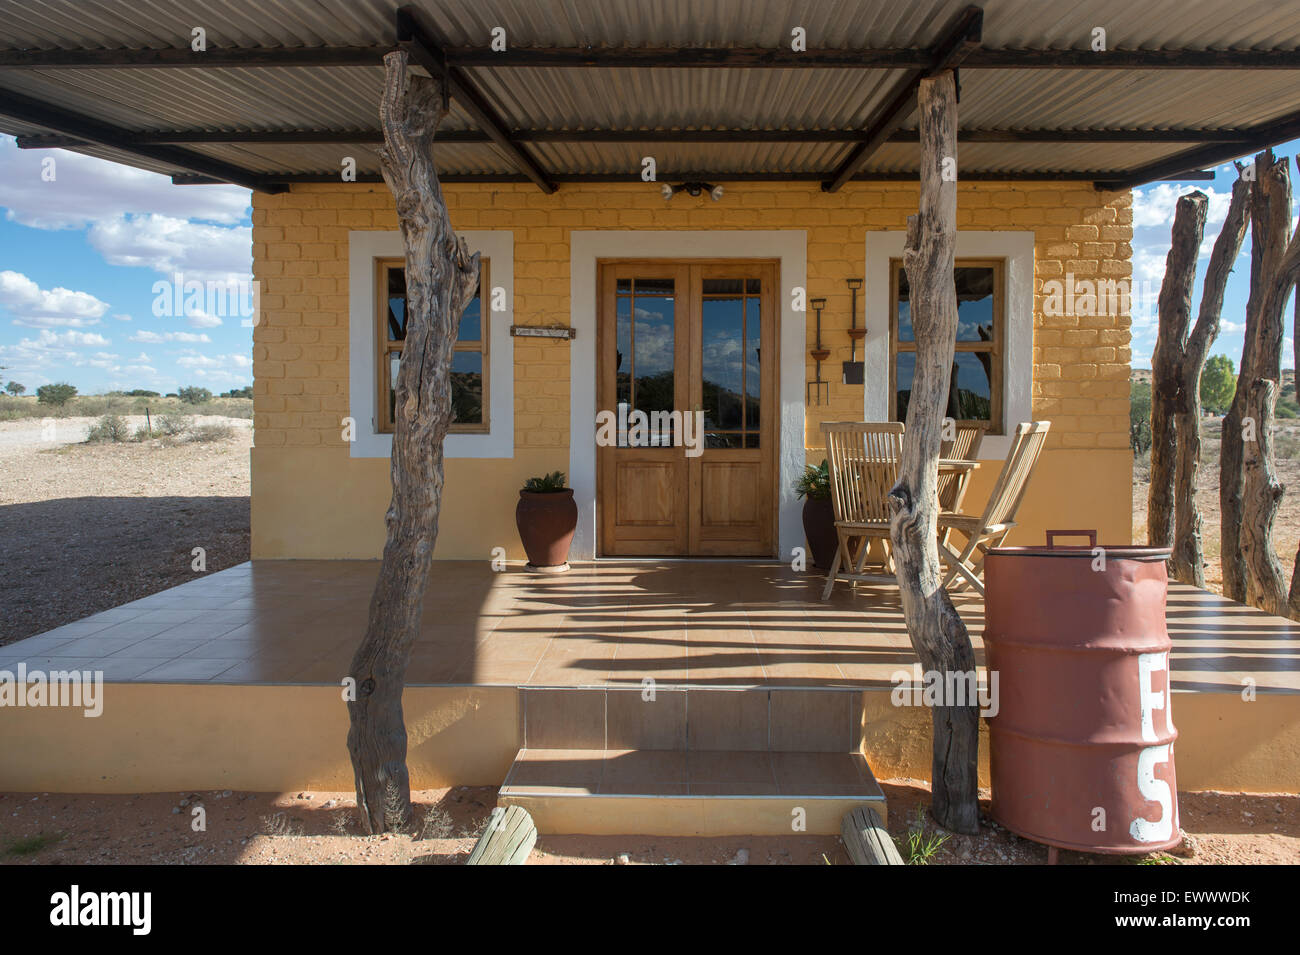 Namibia - Bauernhof Stall bauen in Wüste. Stockfoto